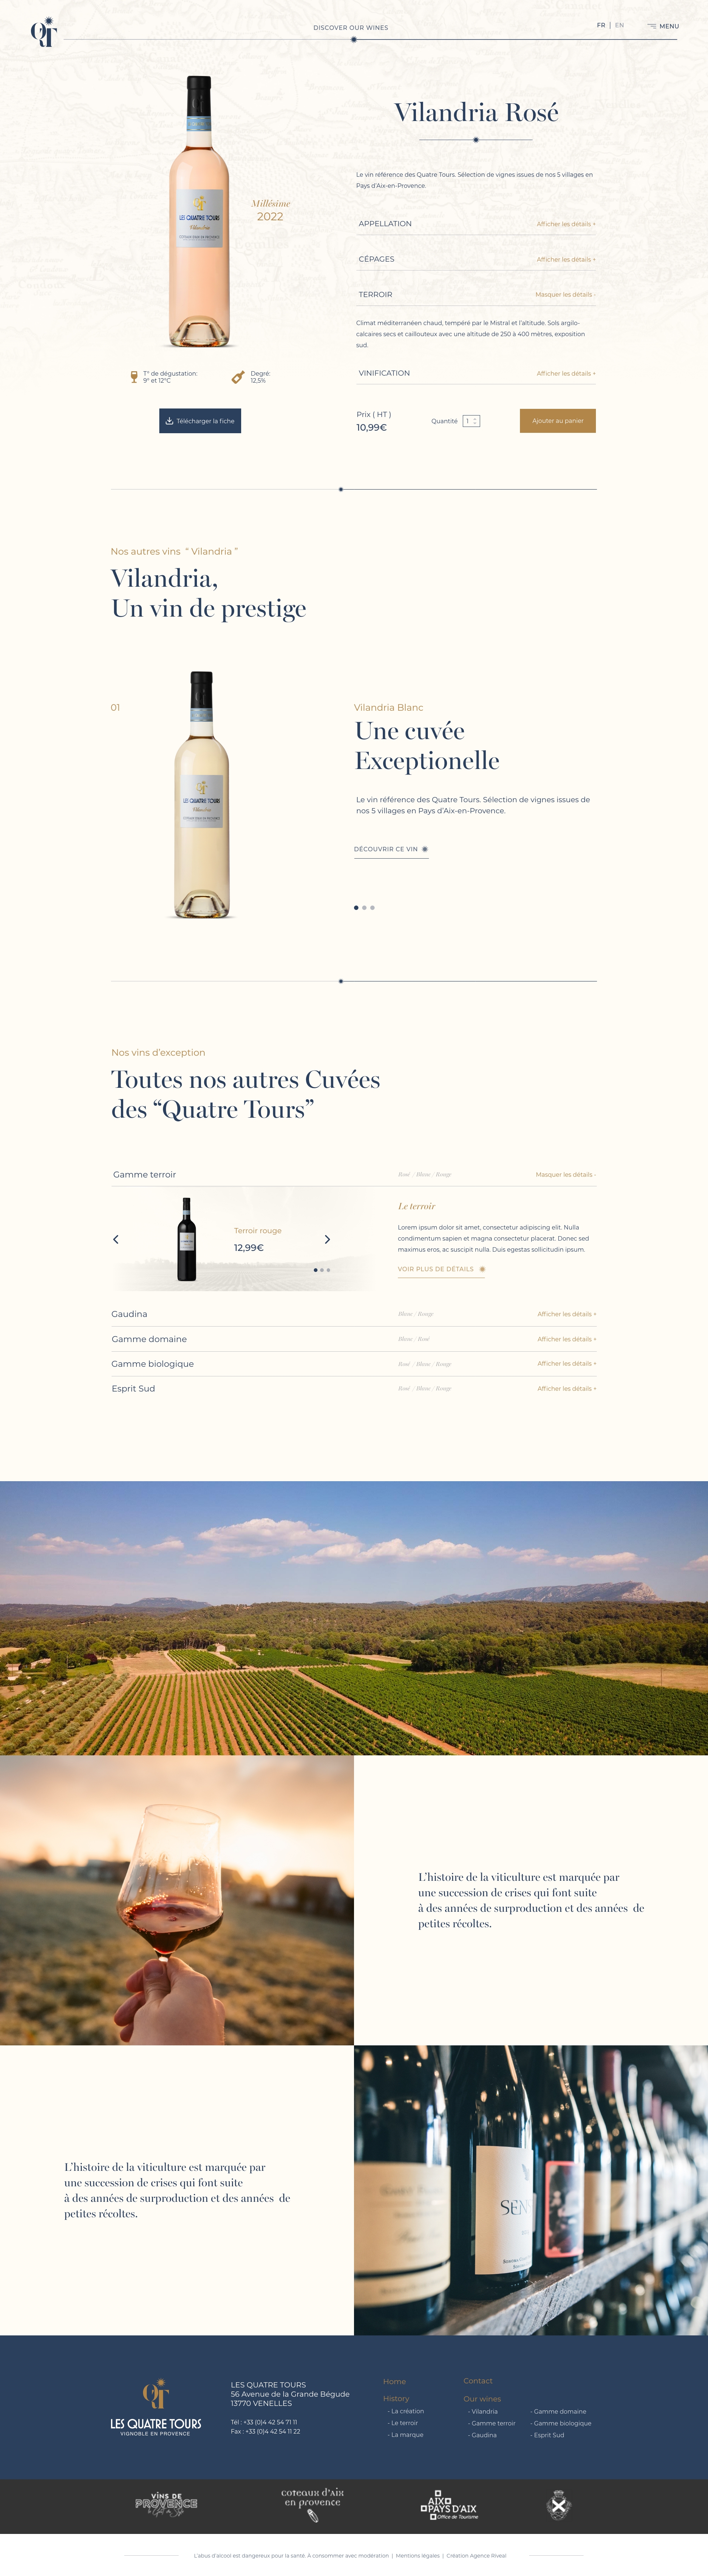 Web Design page details des vins -  Quatre tours